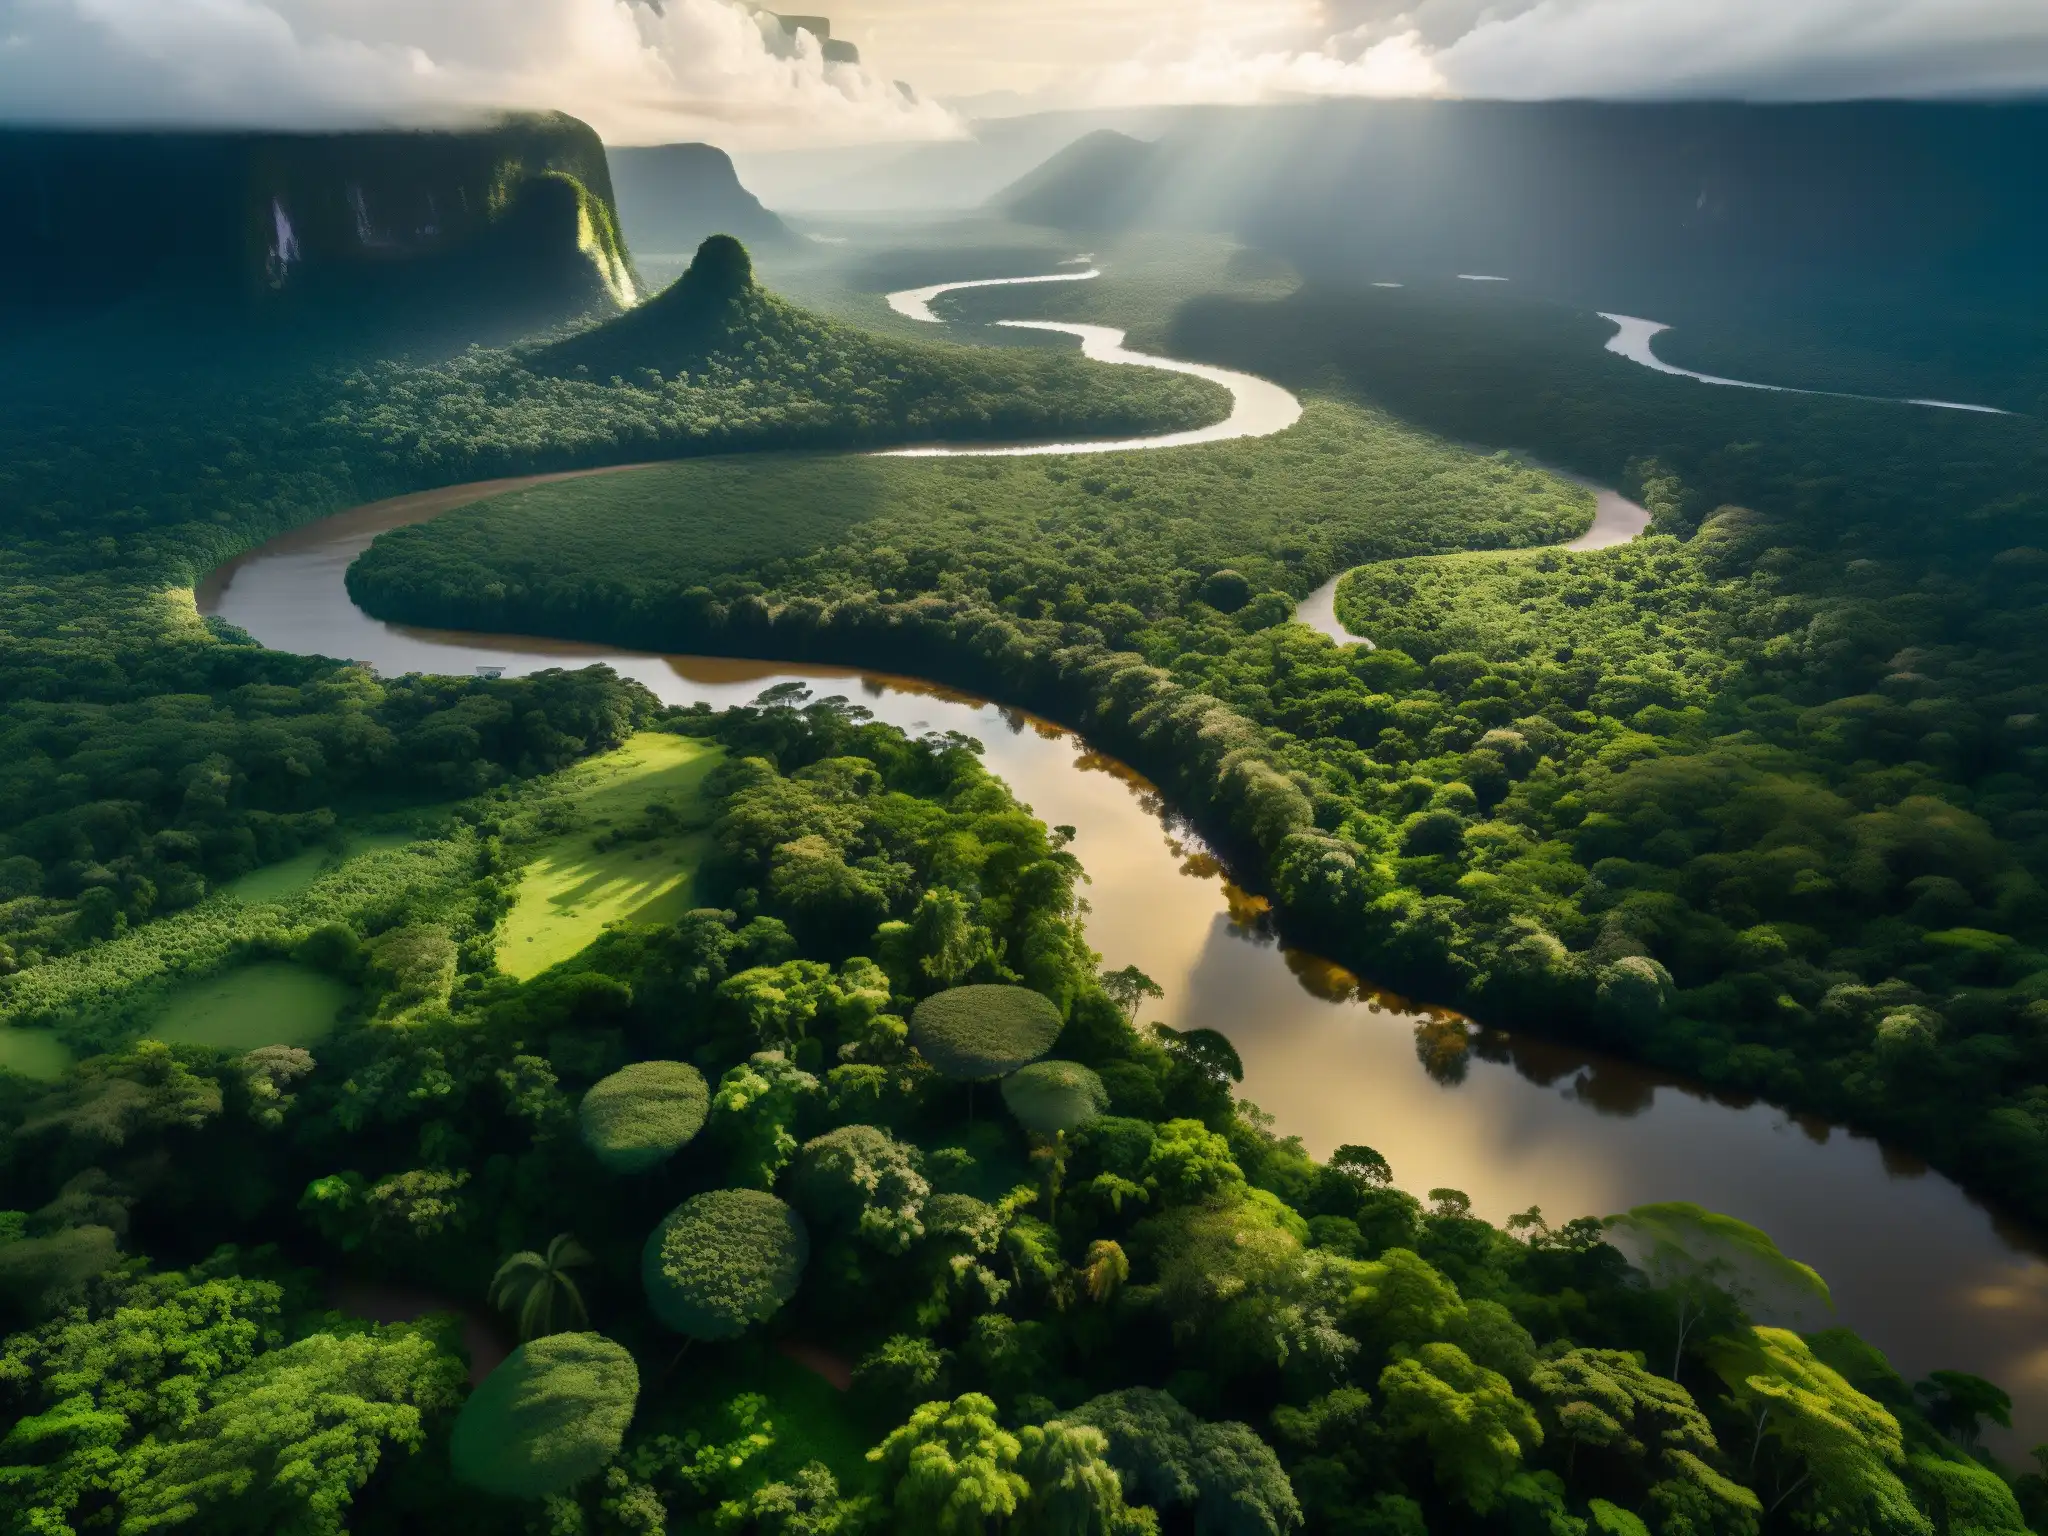 Vista aérea impresionante de la densa selva amazónica, con el sol proyectando sombras dramáticas a través del dosel, revelando el exuberante follaje verde y los ríos serpenteantes